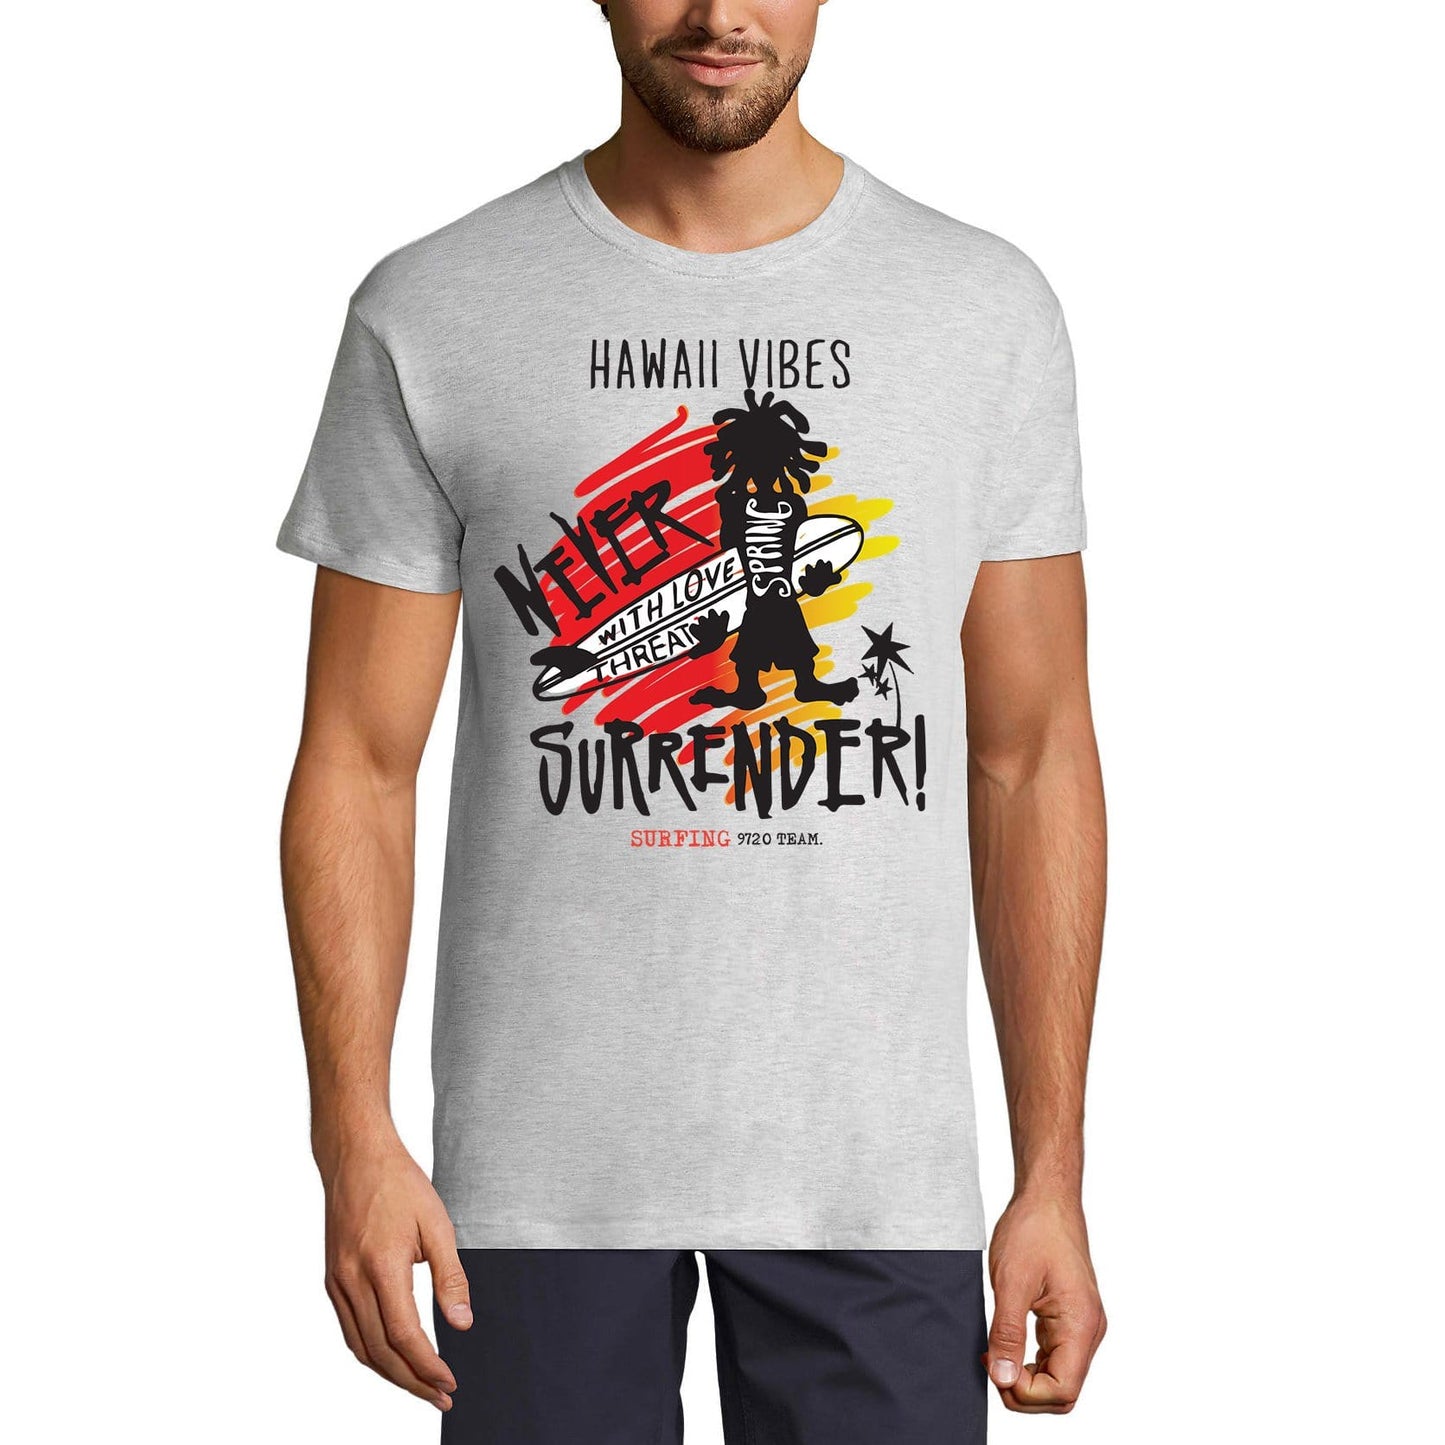 ULTRABASIC Men's Novelty T-Shirt Never Surrender Hawaii Vibes - Surf Tee Shirt